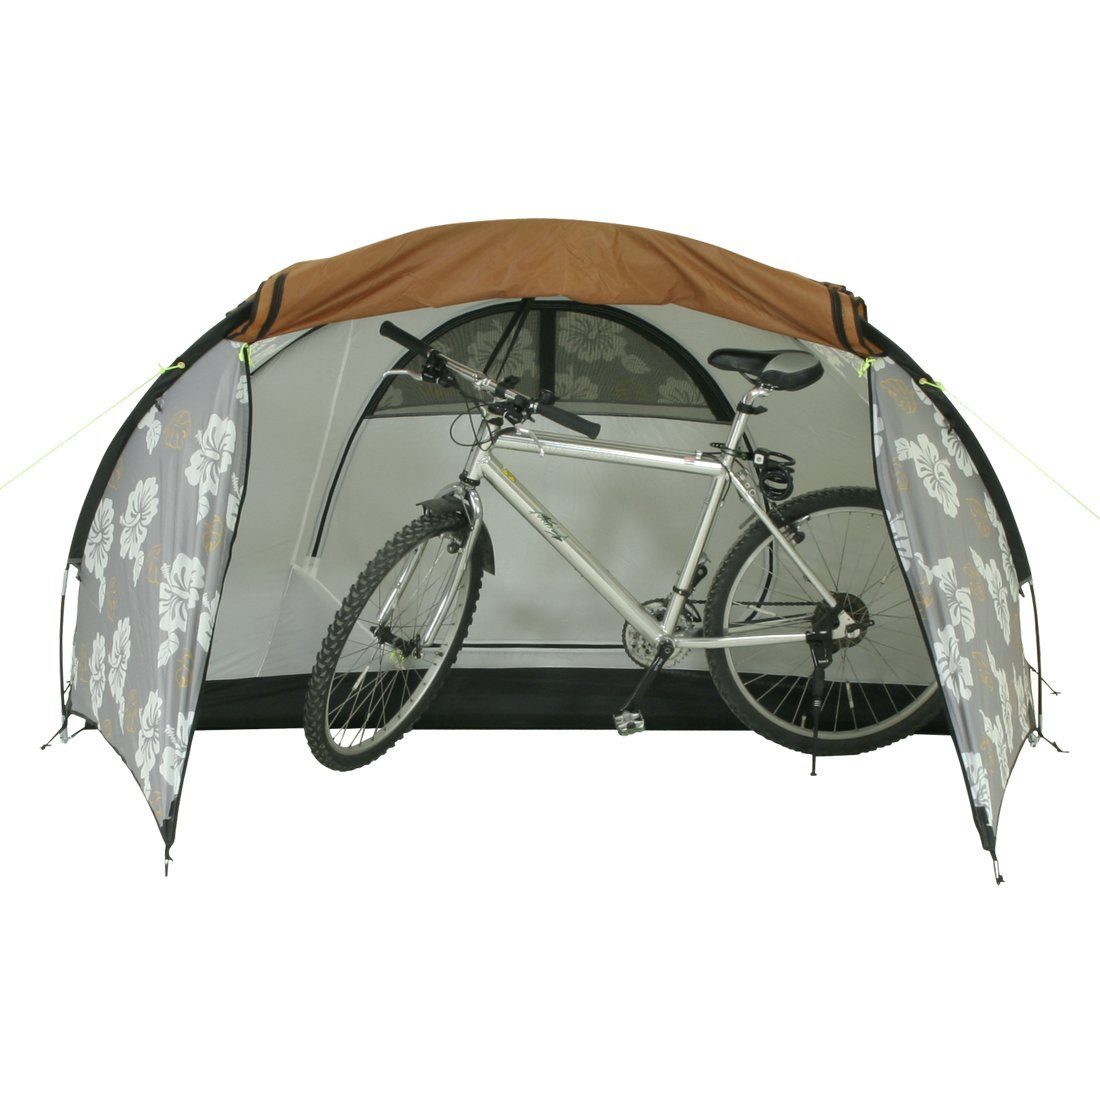 10T Zelt ProBike 2 5000mm, Fahrradzelt 2 Kuppelzelt Bikerzelt Trekkingzelt Outdoor Equipment Mann Personen: